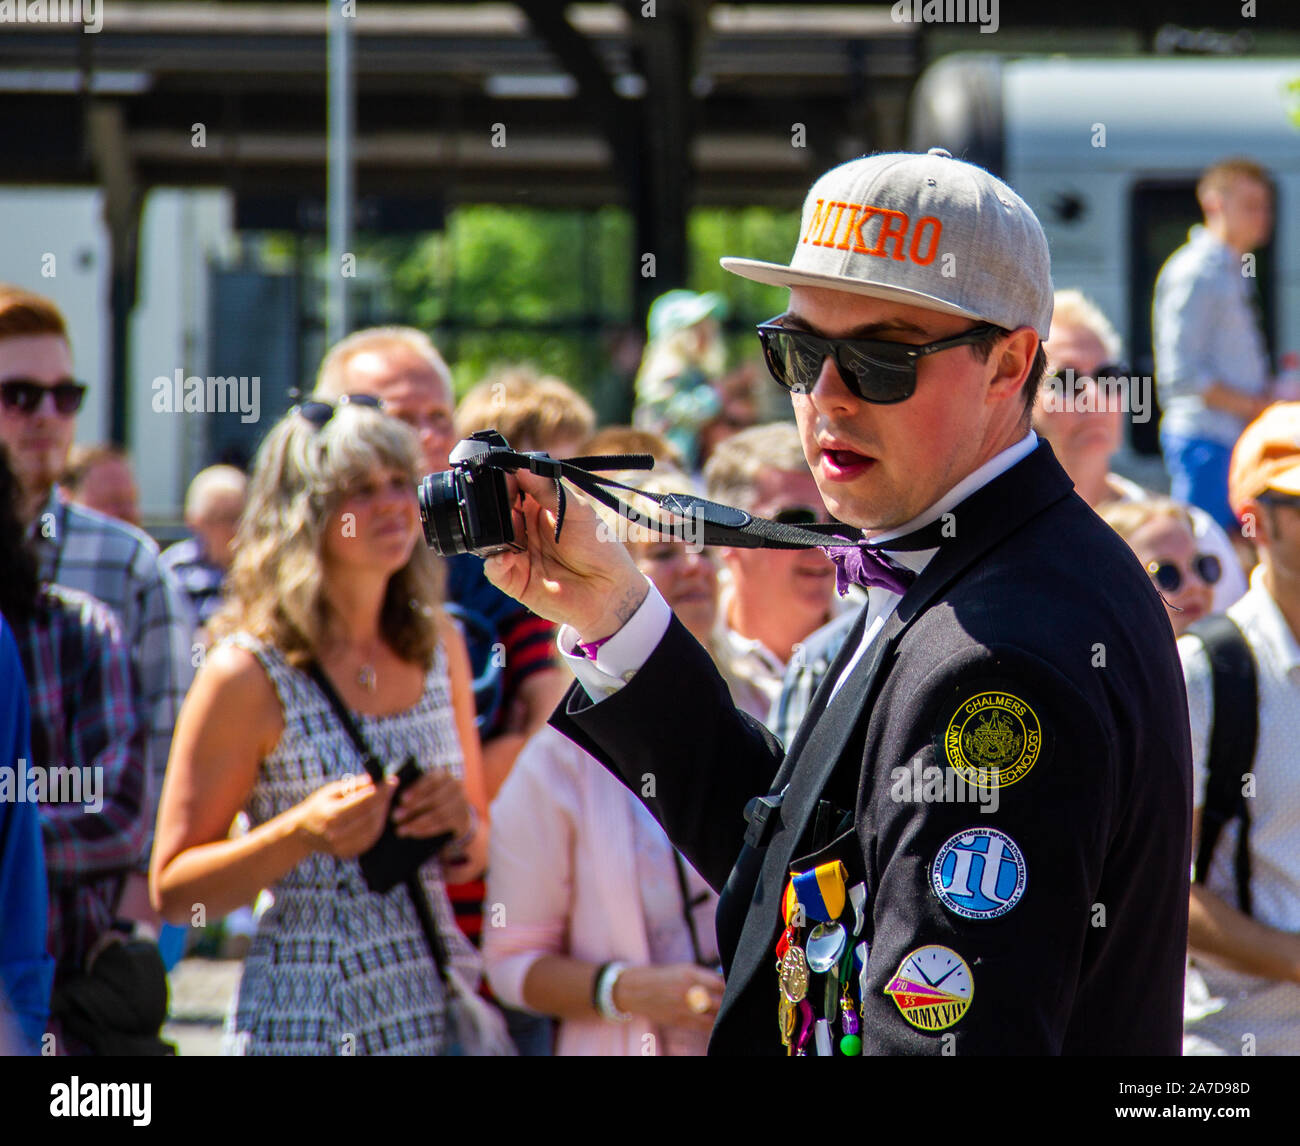 Un jeune homme participant à la parade Lundakarnevalen tout en prenant des photos en tant que photographe. Il porte un chapeau, des lunettes et un costume avec marquage Banque D'Images